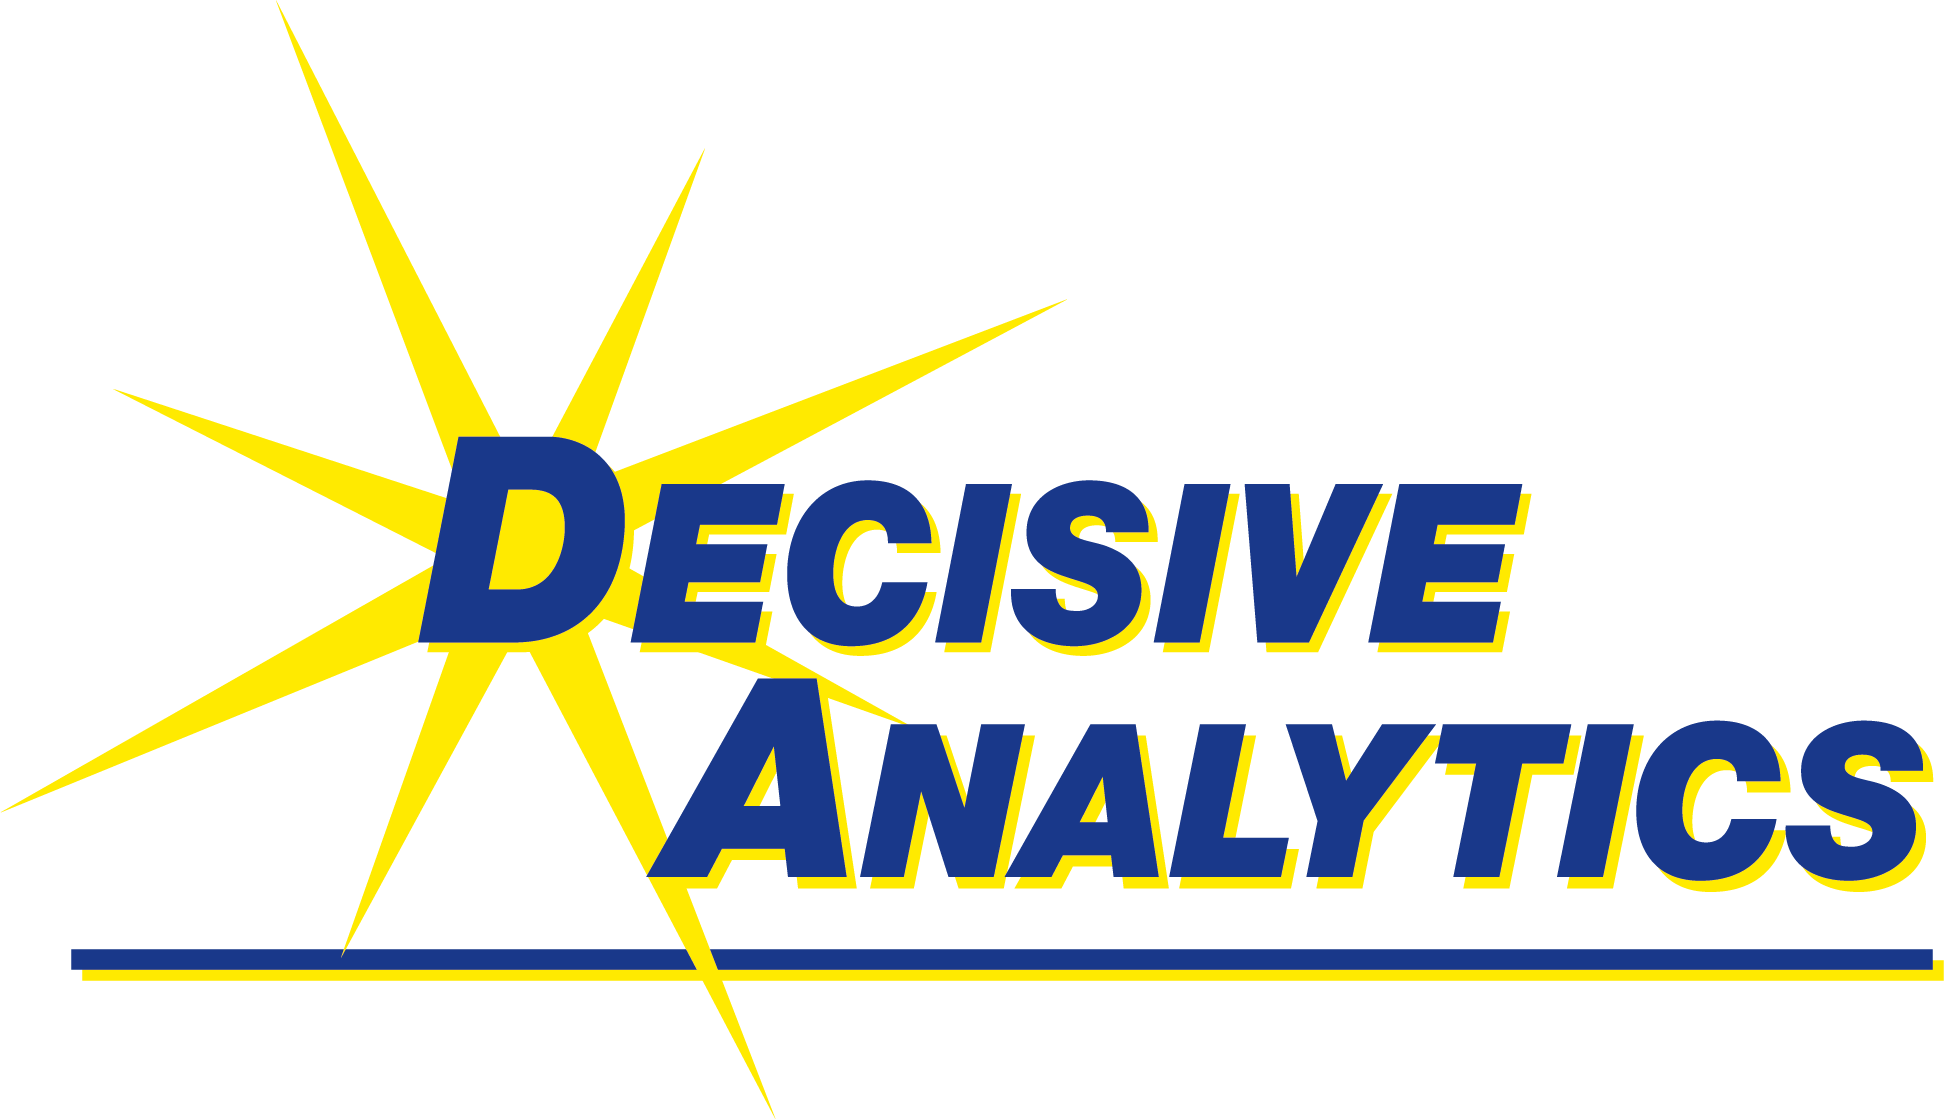 DECISIVE ANALYTICS Corporation logo